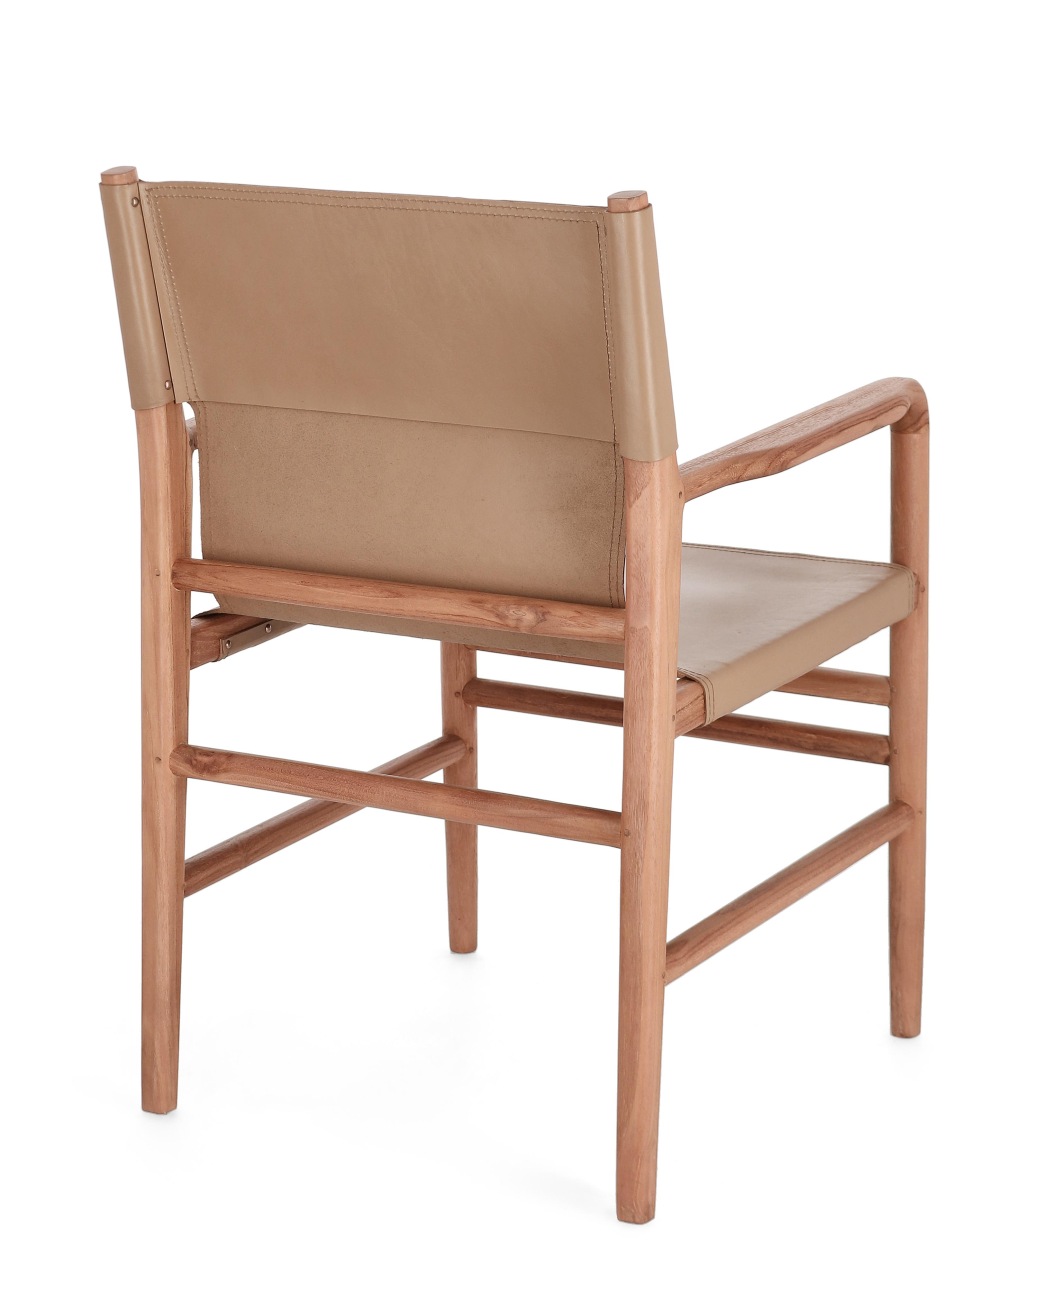 Der Esszimmerstuhl Caroline überzeugt mit seinem modernen Stil. Gefertigt wurde er aus Leder, welches einen Taupe Farbton besitzt. Das Gestell ist aus Teakholz und hat eine natürliche Farbe. Der Stuhl besitzt eine Sitzhöhe von 47 cm.